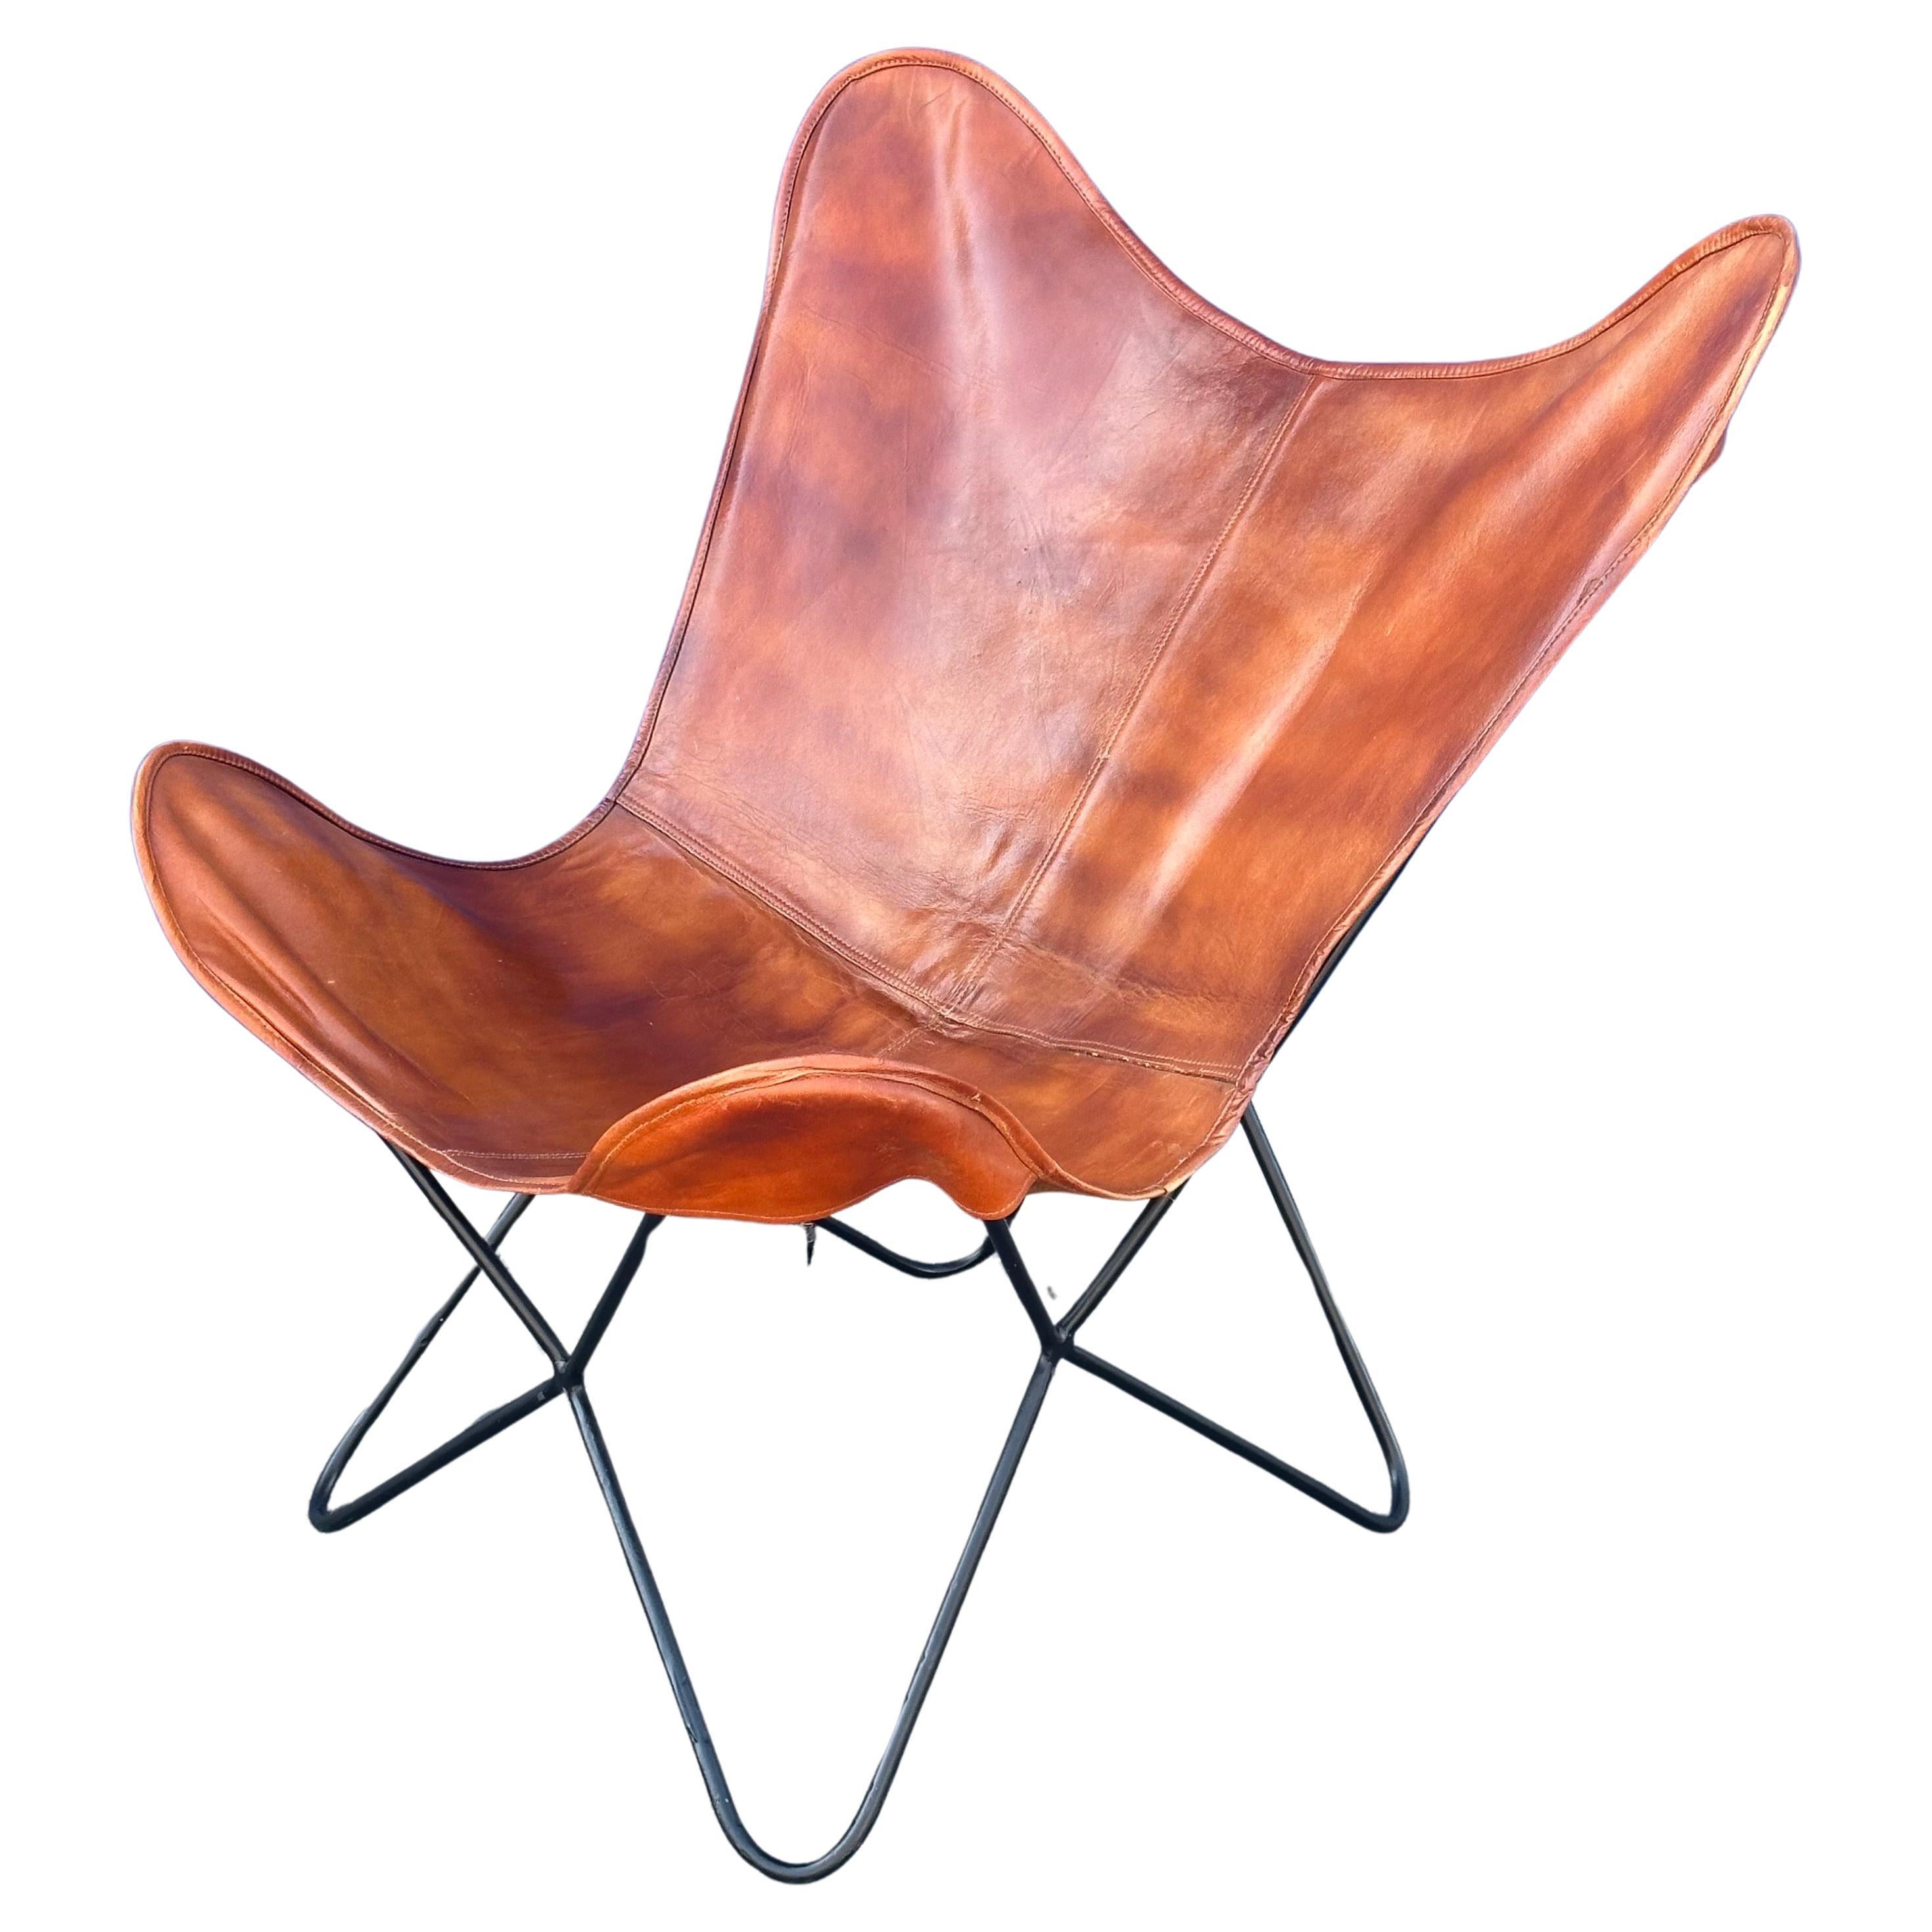 Une chaise papillon en cuir et fer MCM très cool et confortable,  vers les années 1960. La pièce est en très bon état, avec une belle patine. Elle mesure 16 